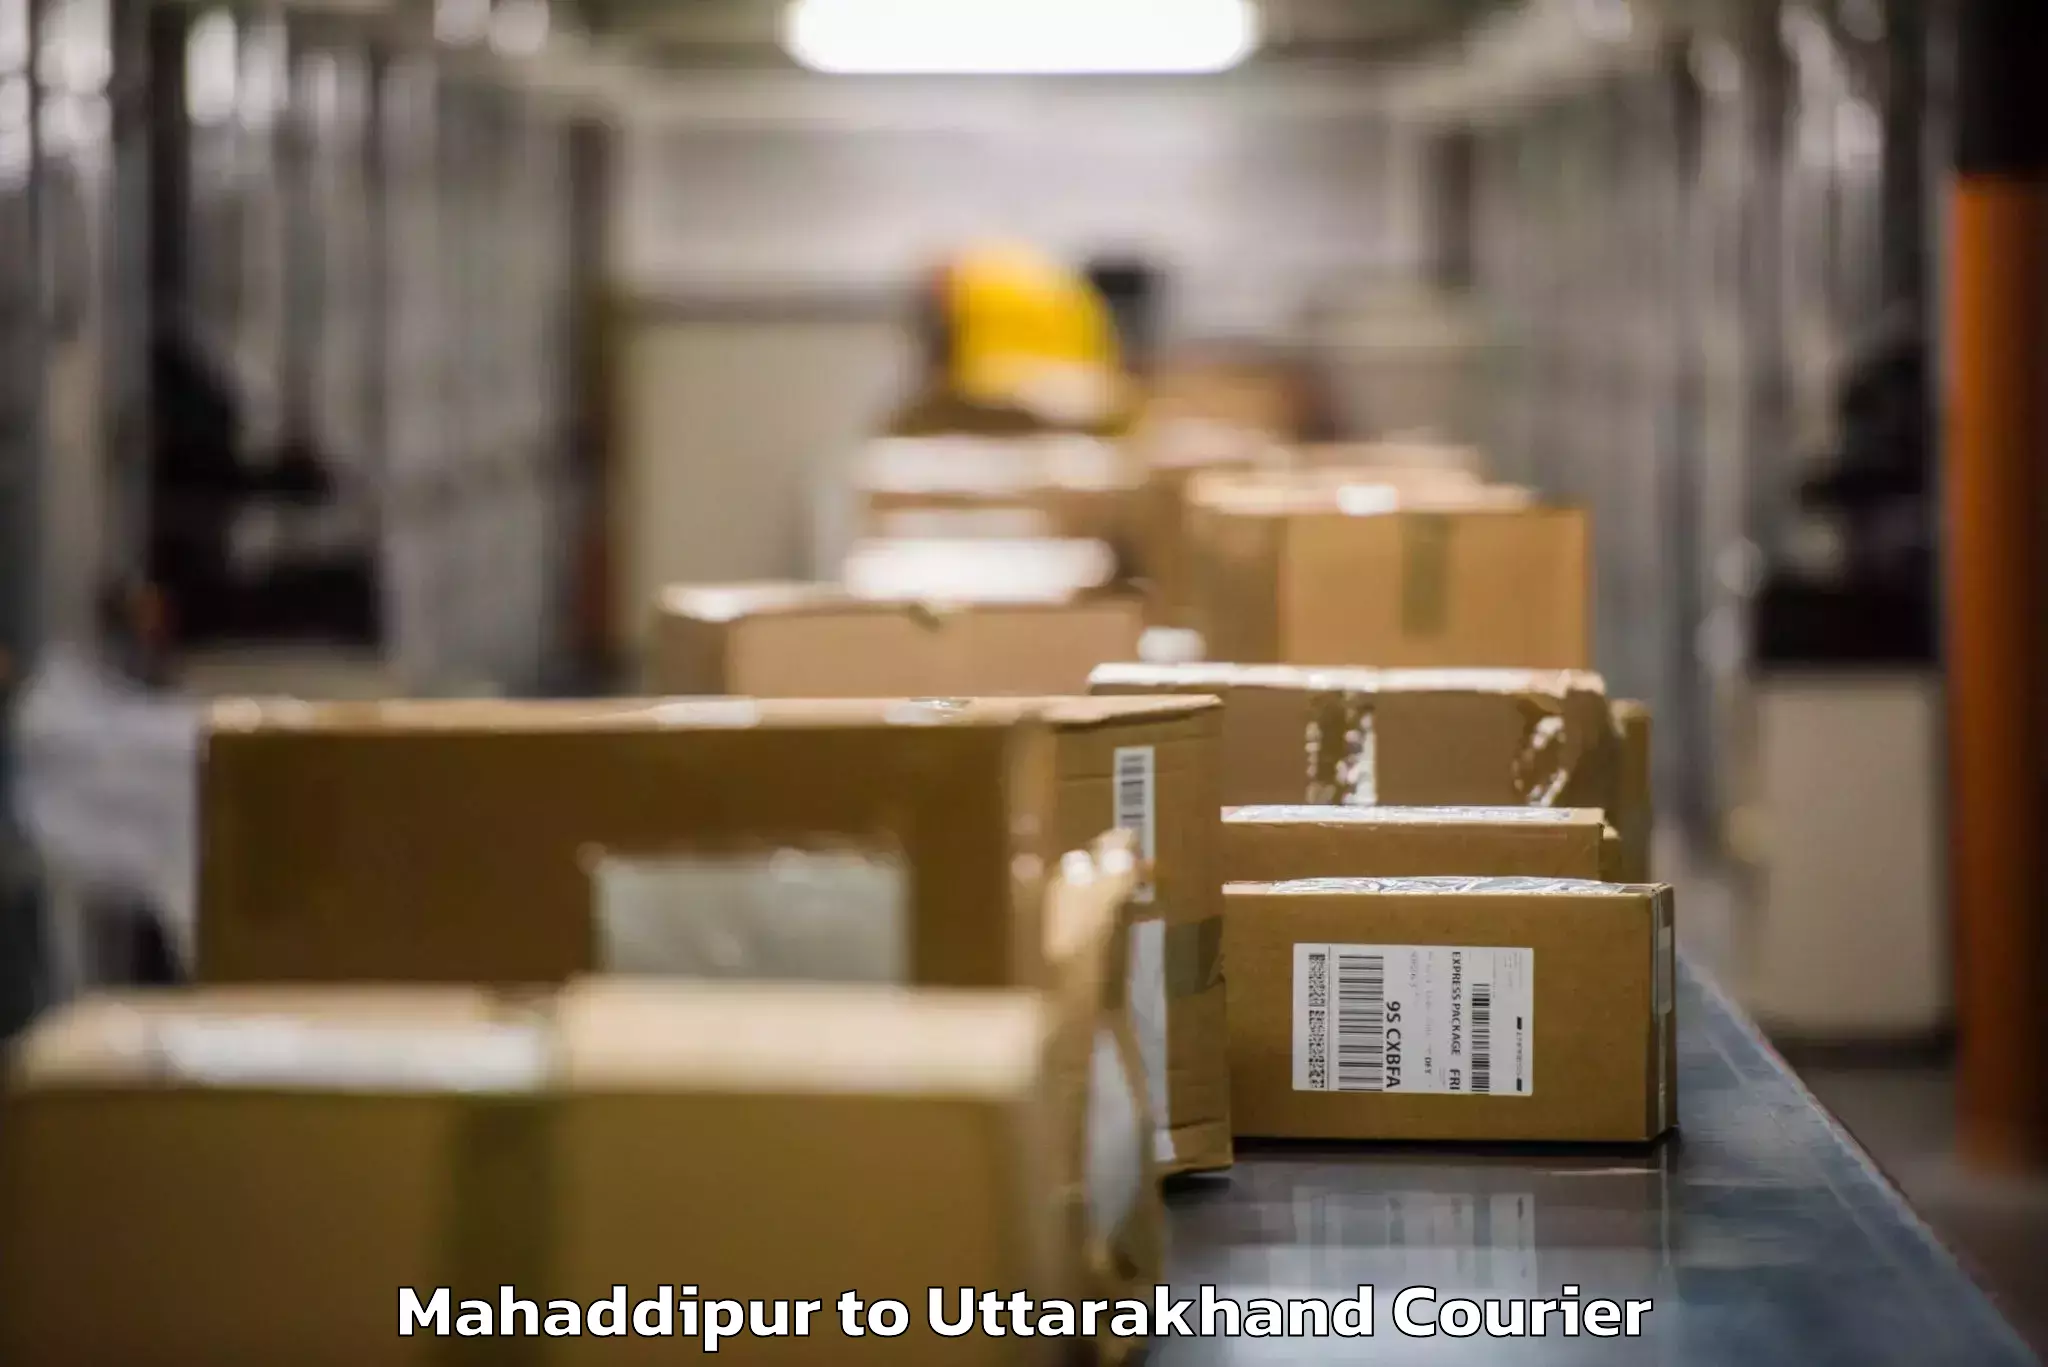 Baggage shipping experts Mahaddipur to Kotdwara